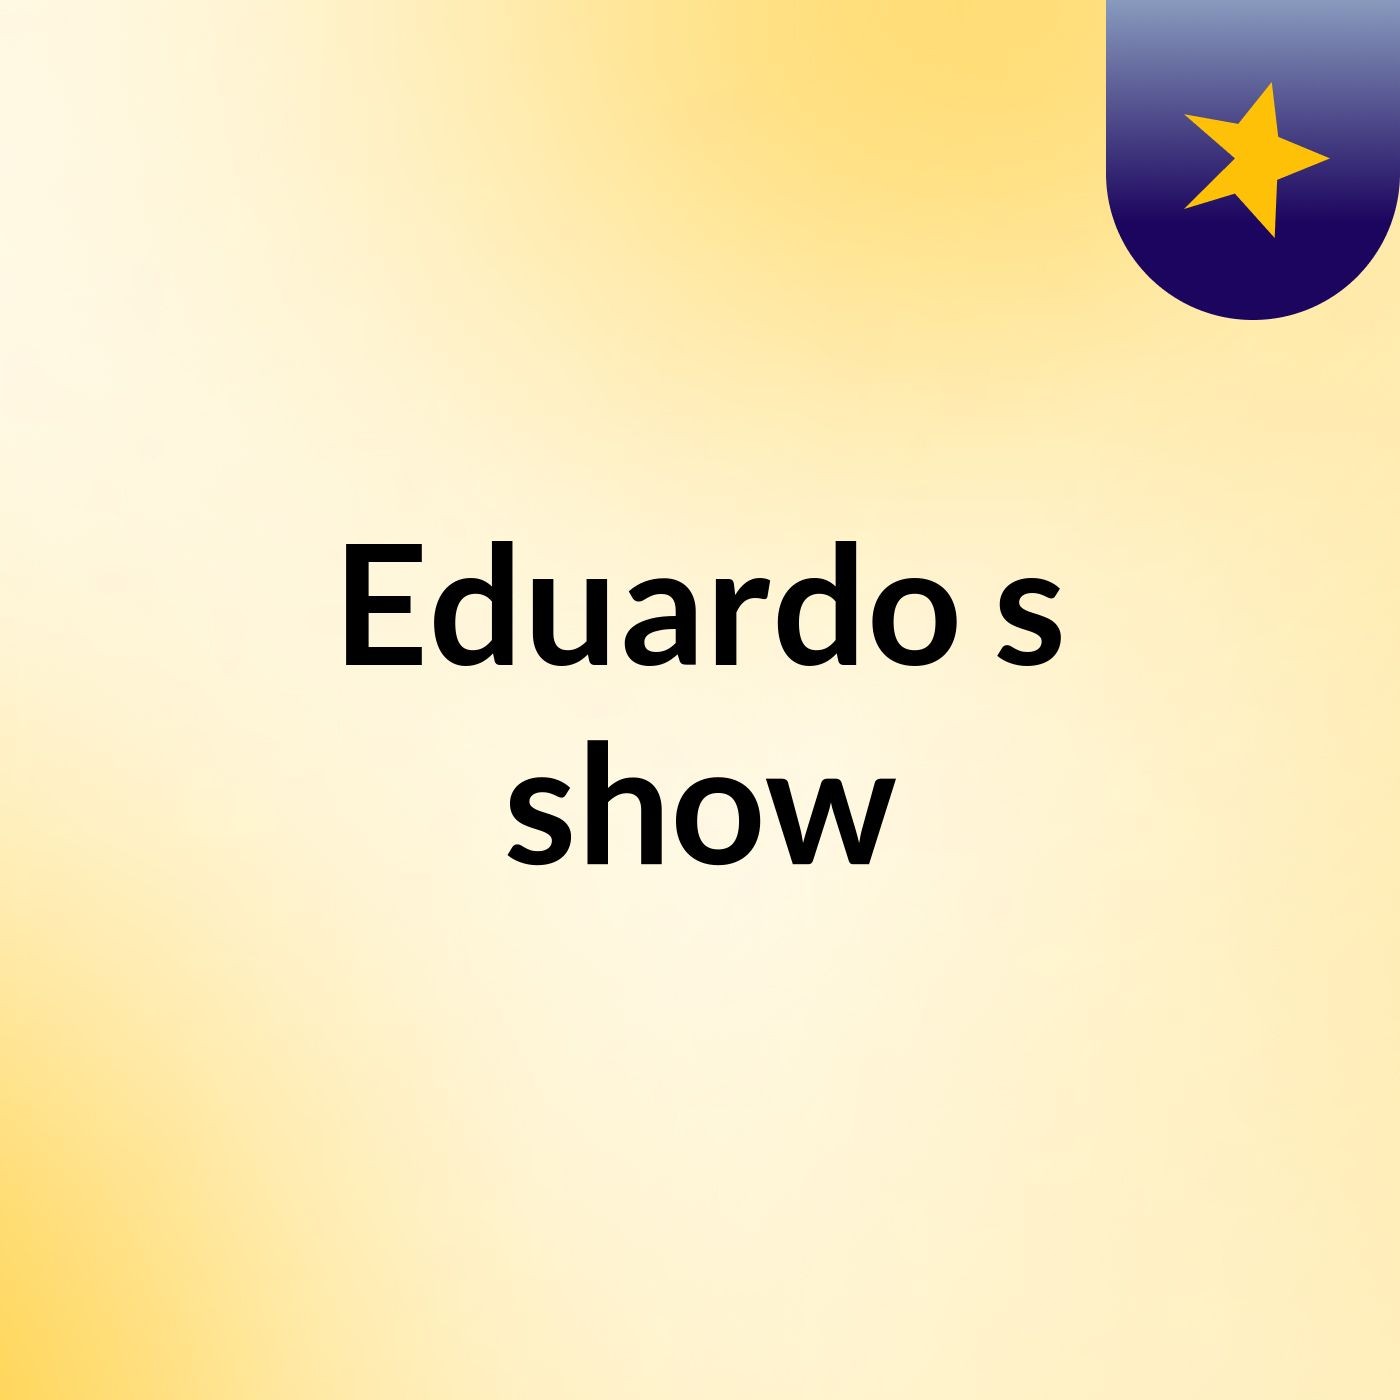 Eduardo's show